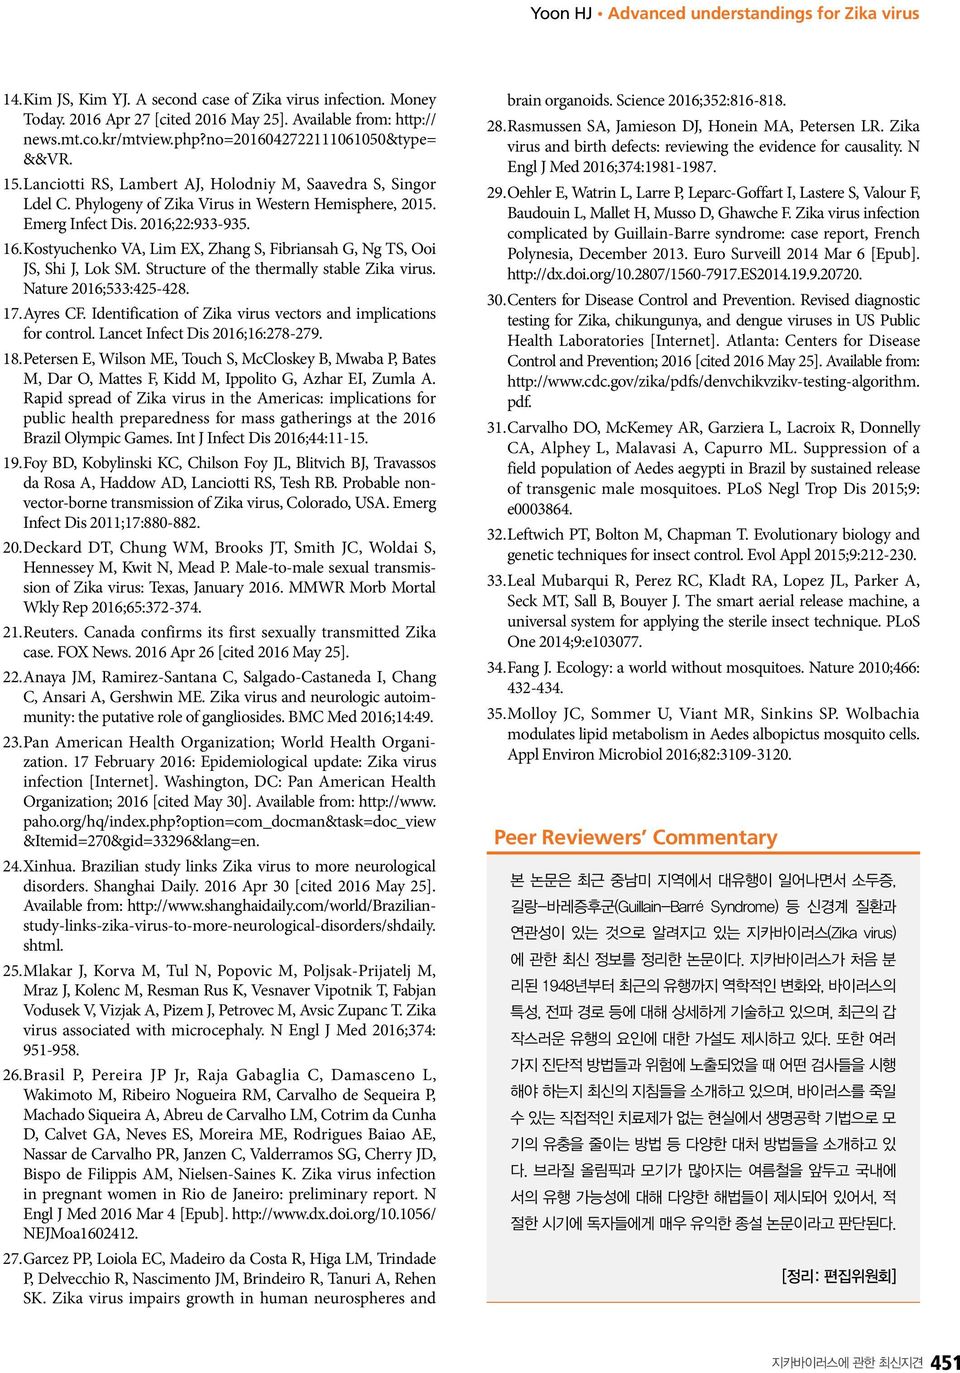 Kostyuchenko VA, Lim EX, Zhang S, Fibriansah G, Ng TS, Ooi JS, Shi J, Lok SM. Structure of the thermally stable Zika virus. Nature 2016;533:425-428. 17. Ayres CF.